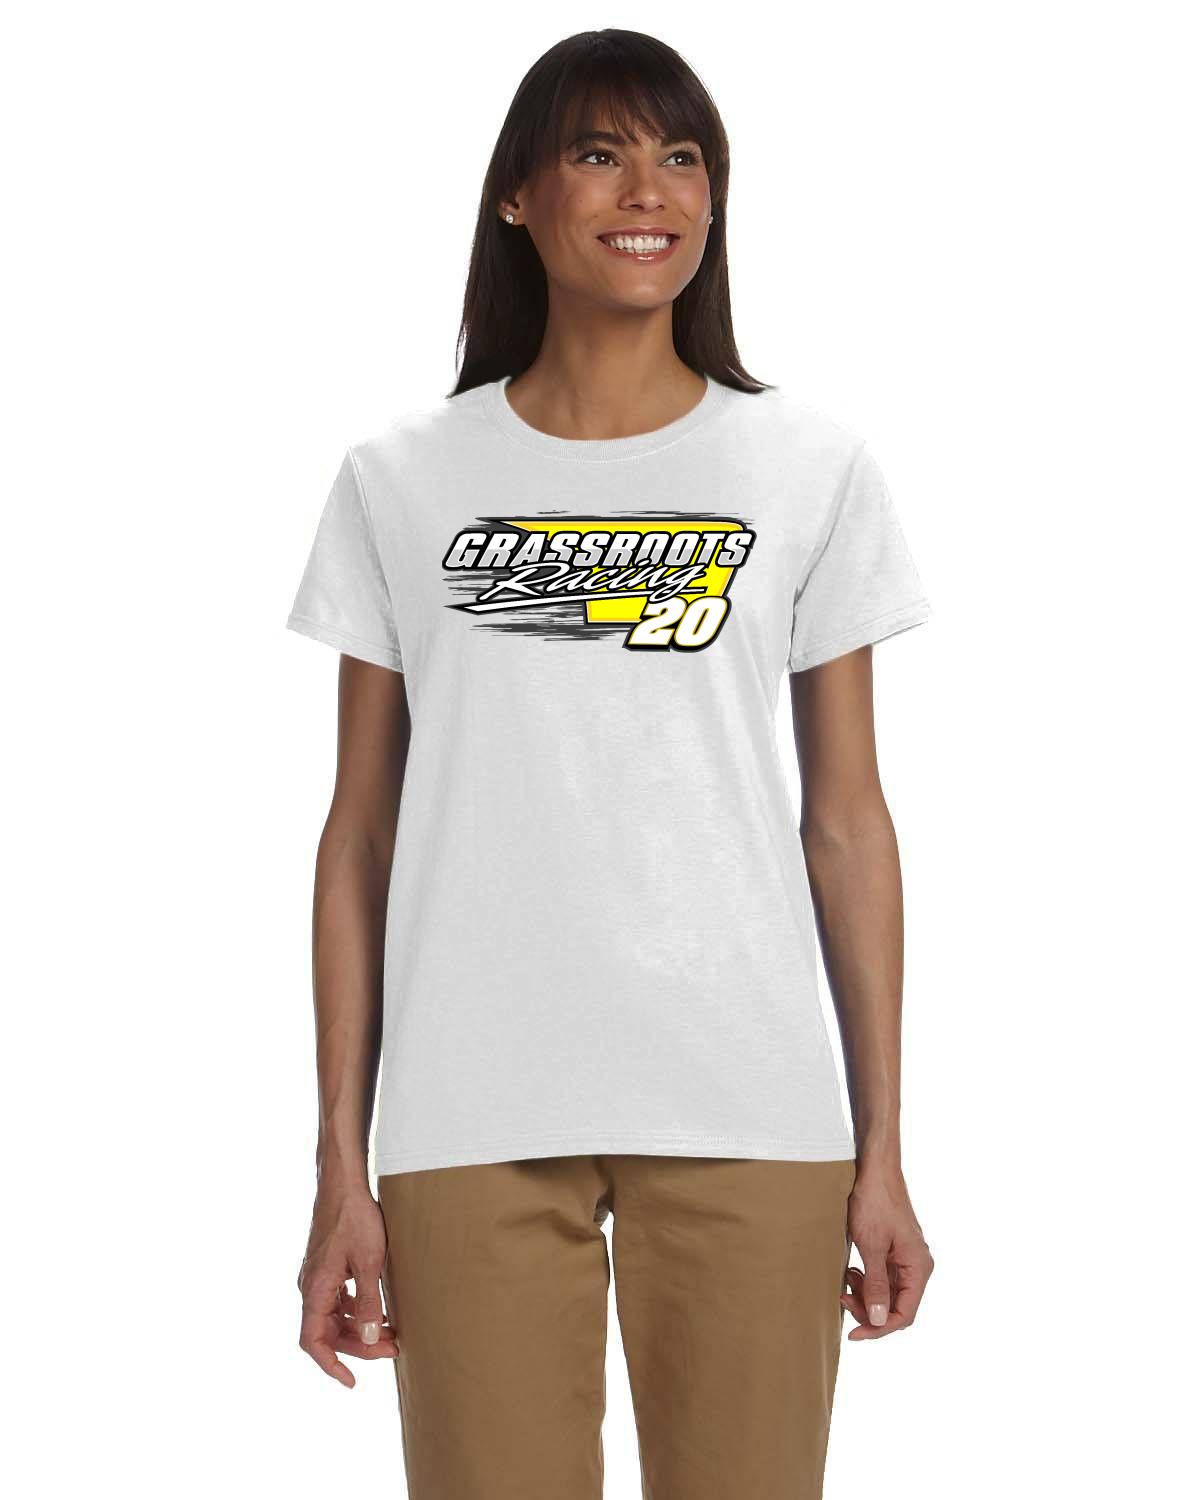 Cole McFadden / Grassroots Racing Women's tshirt